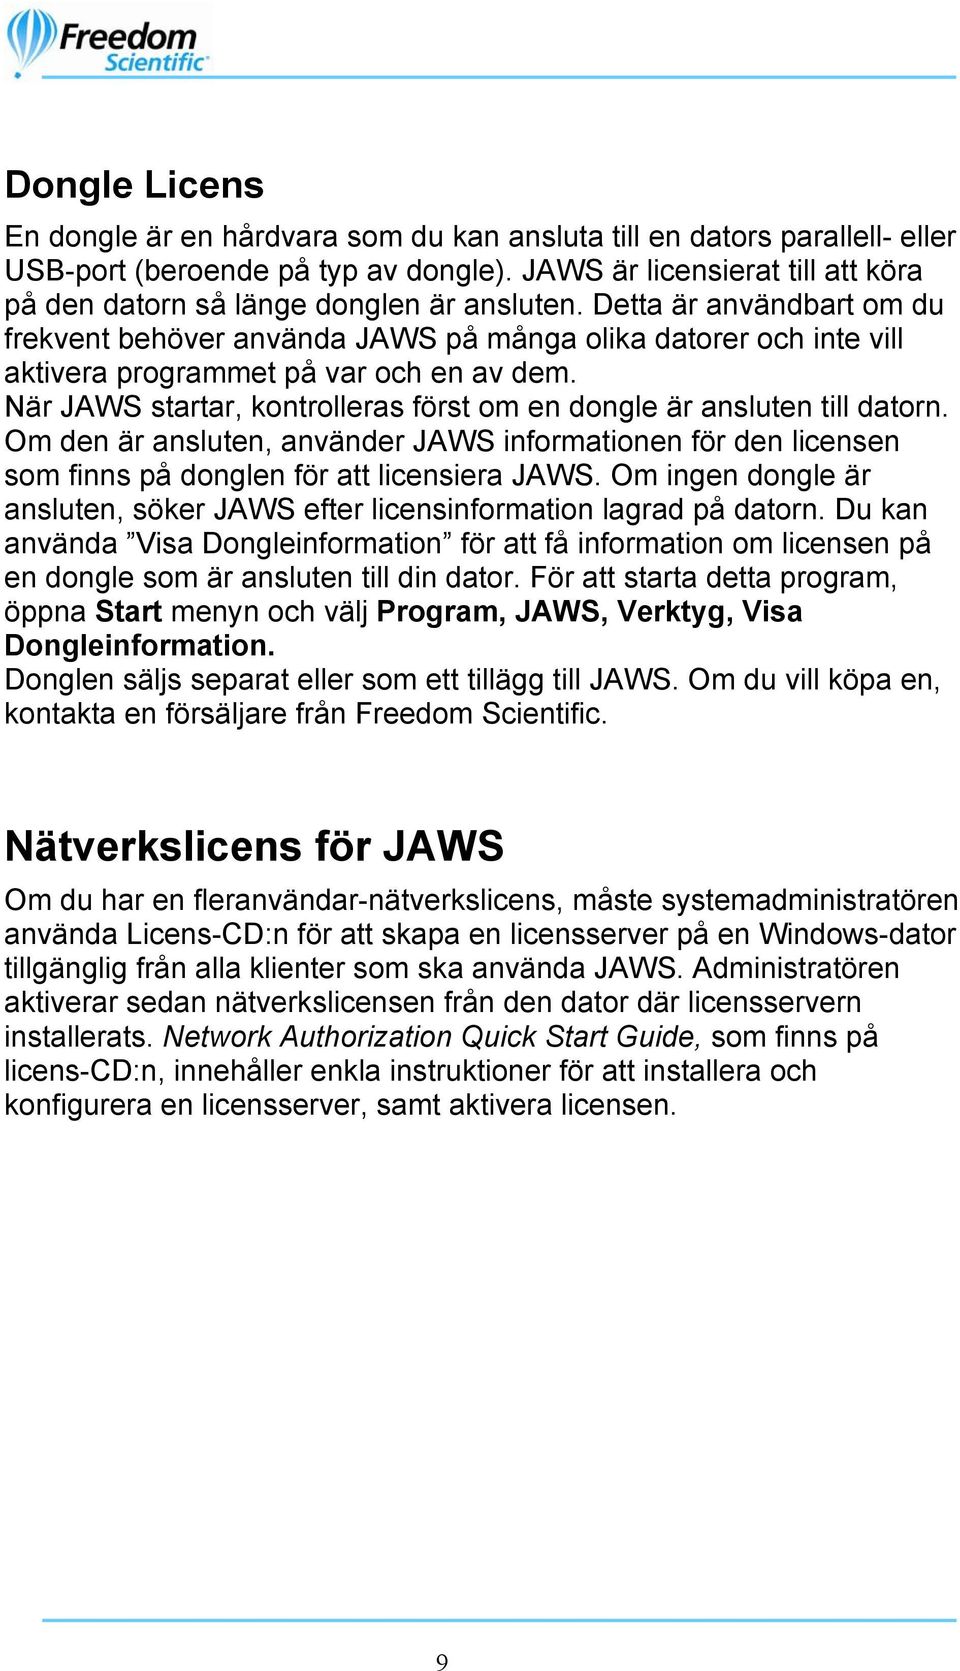 Detta är användbart om du frekvent behöver använda JAWS på många olika datorer och inte vill aktivera programmet på var och en av dem.